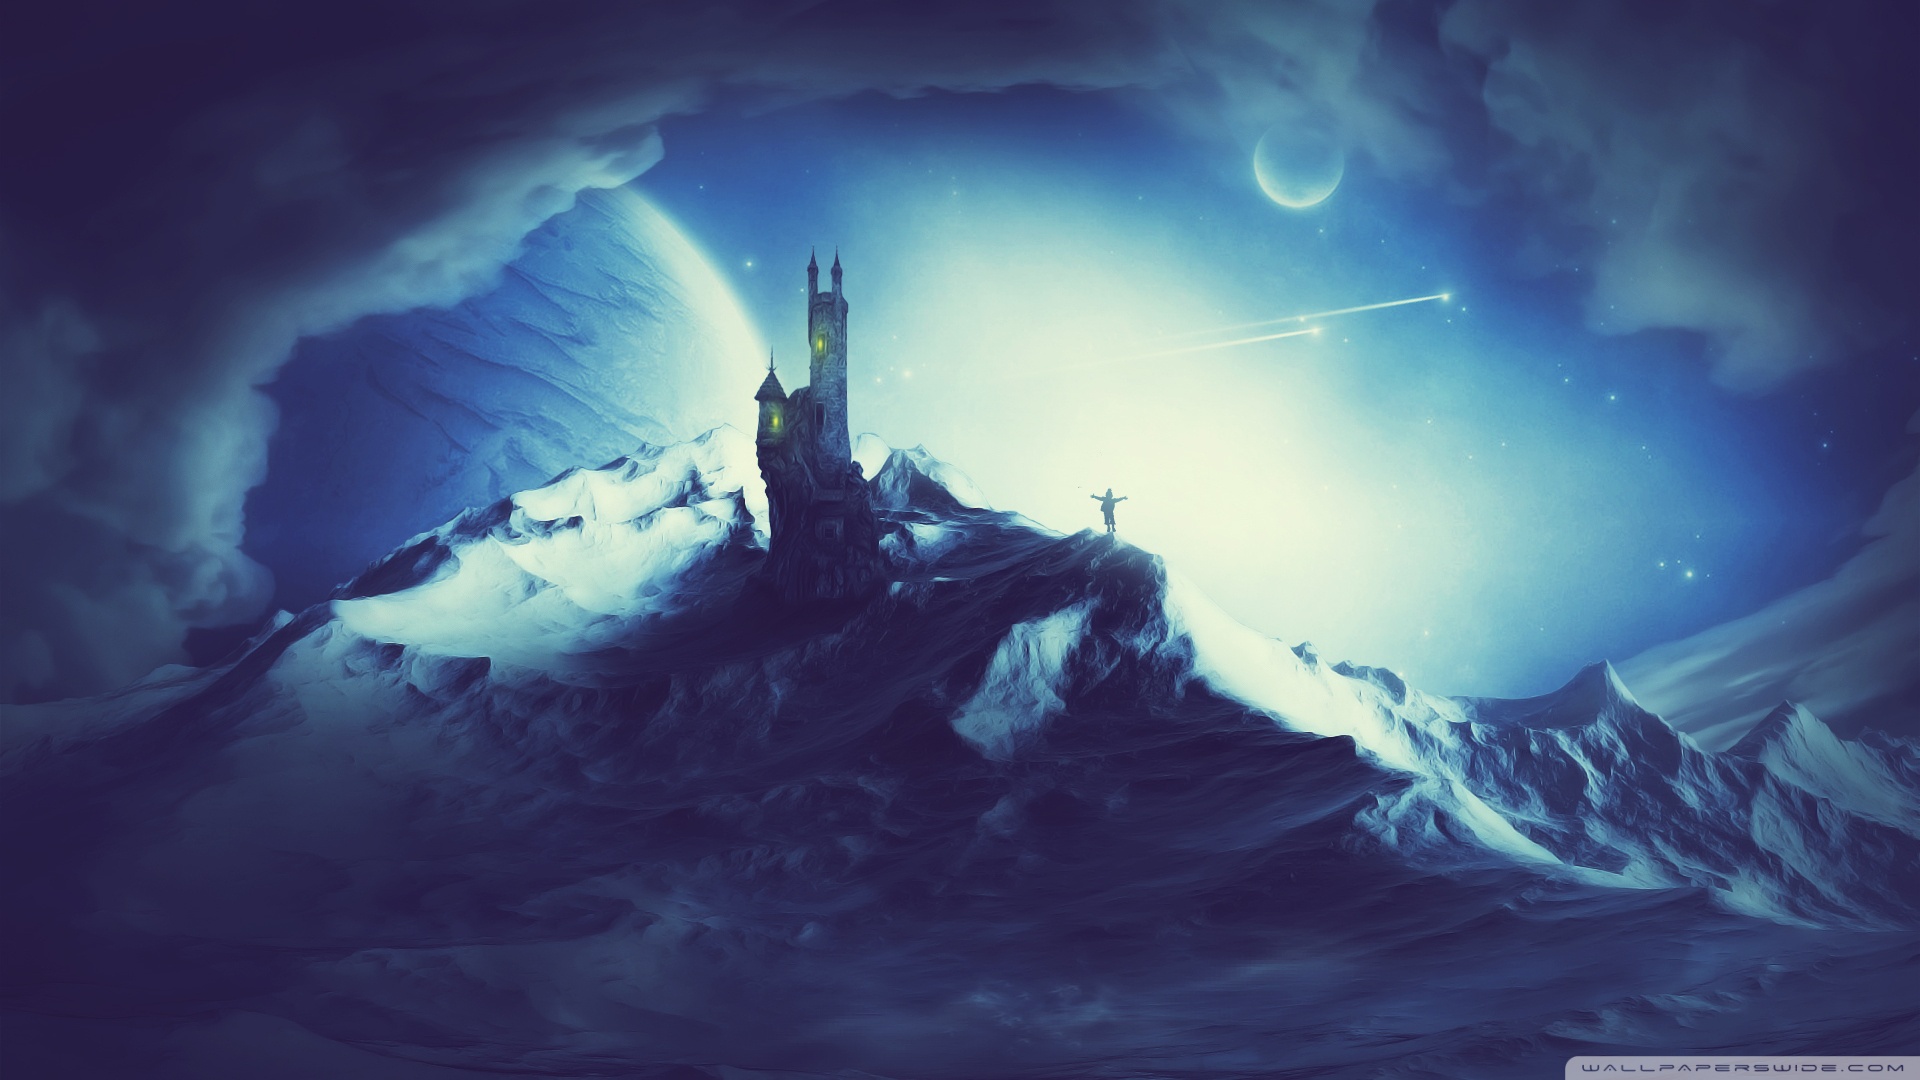 Download mobile wallpaper Landscape, Winter, Fantasy for free.